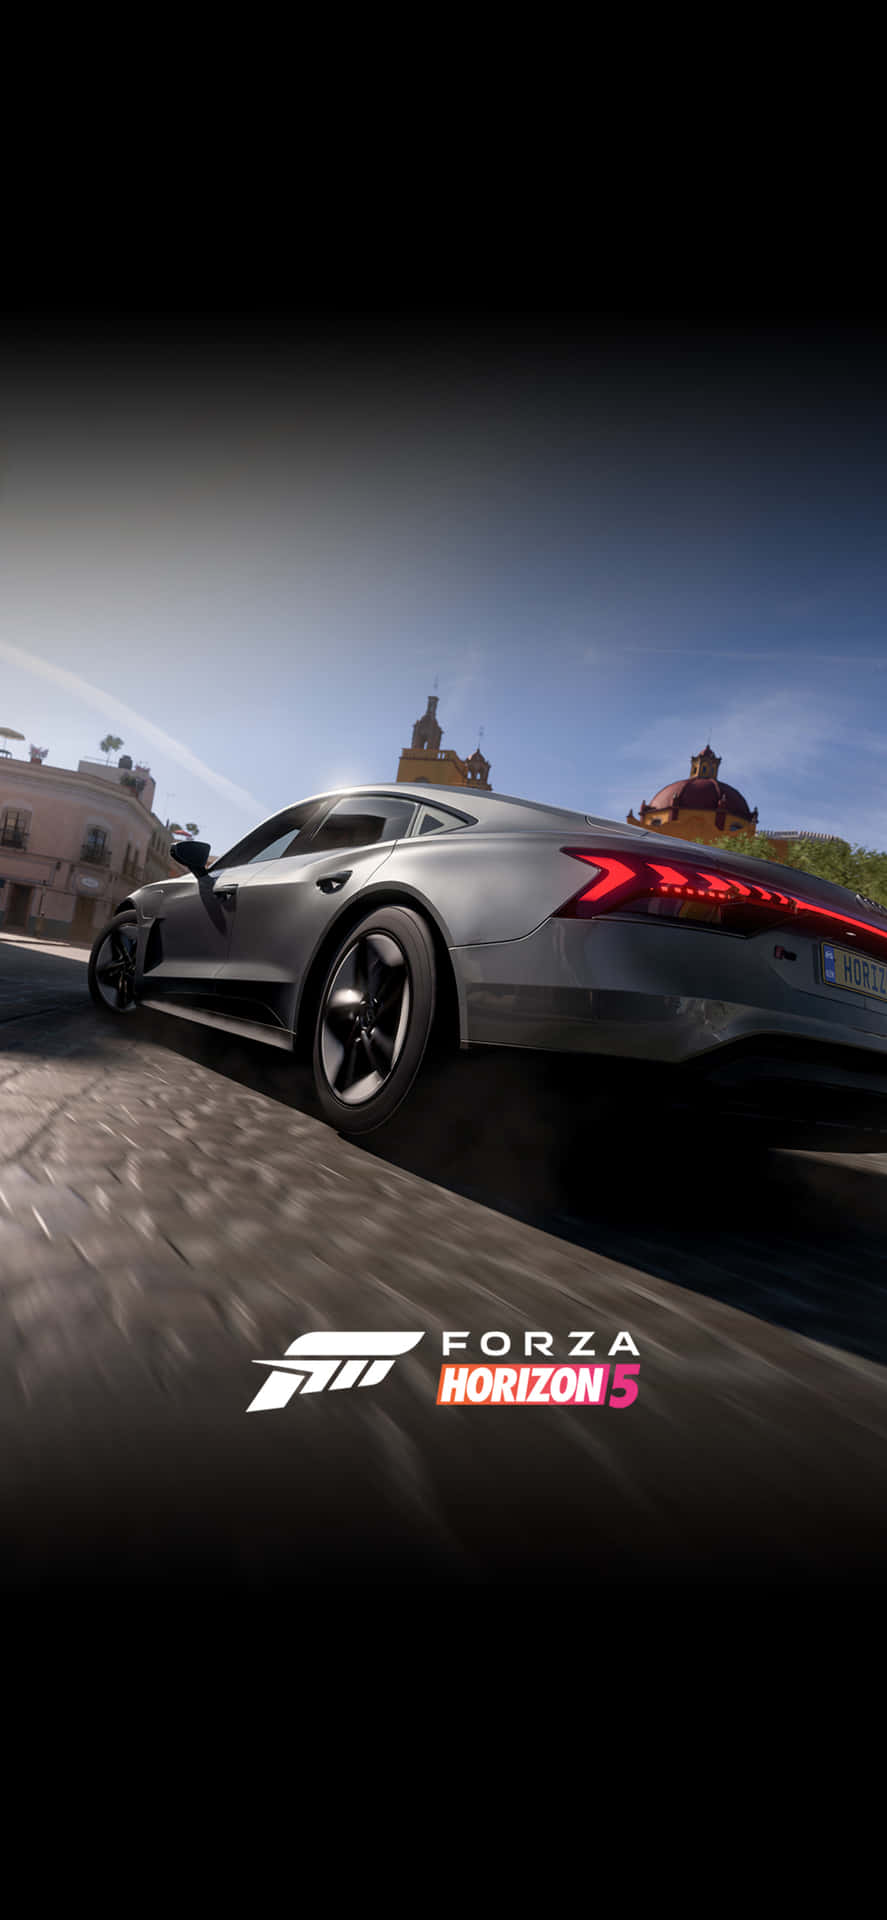 Grauerlamborghini Iphone X Hintergrund Für Forza Motorsport 7